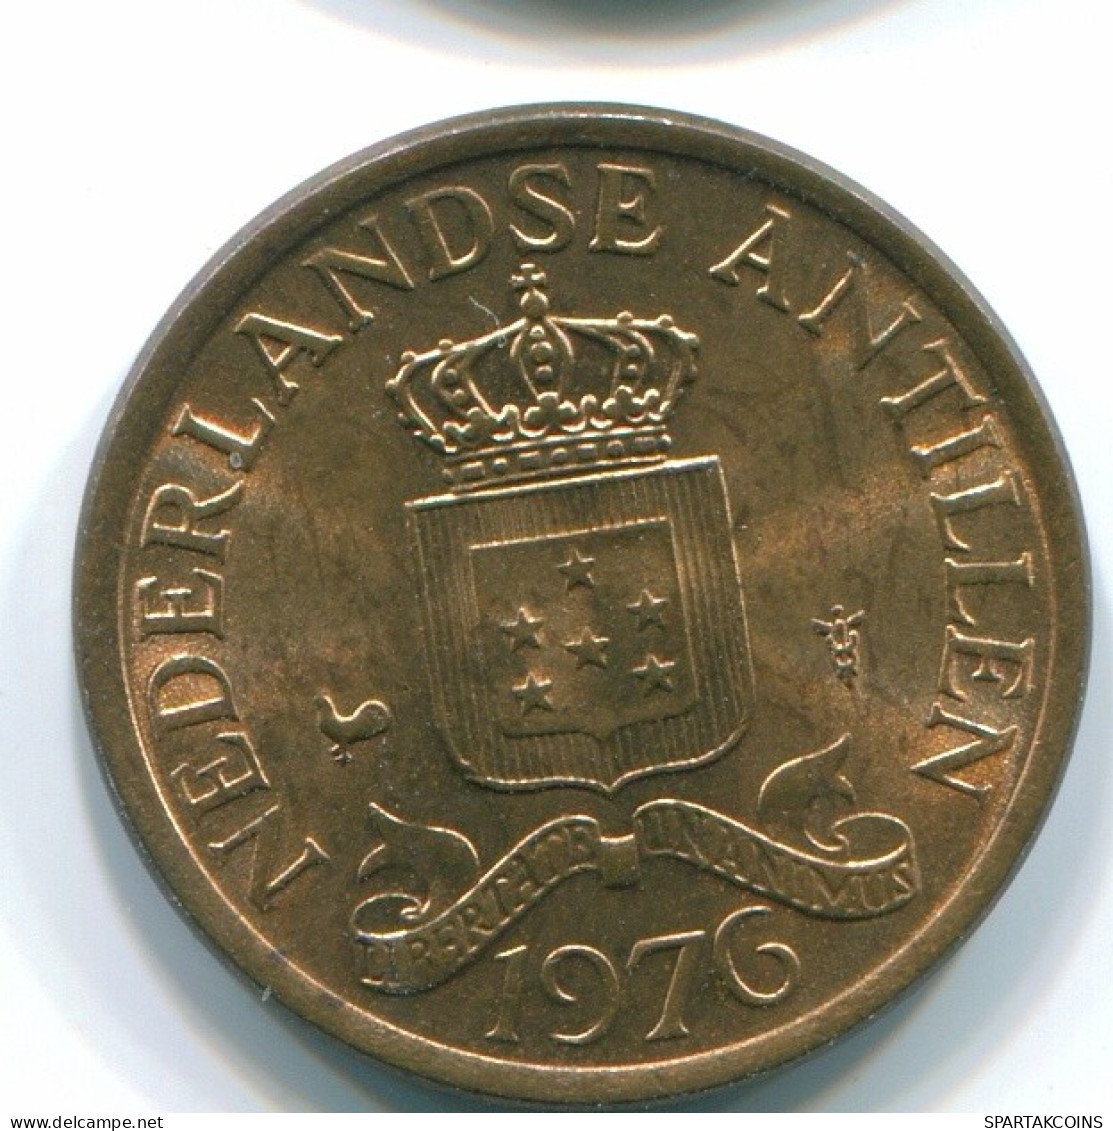 1 CENT 1976 NIEDERLÄNDISCHE ANTILLEN Bronze Koloniale Münze #S10698.D.A - Niederländische Antillen